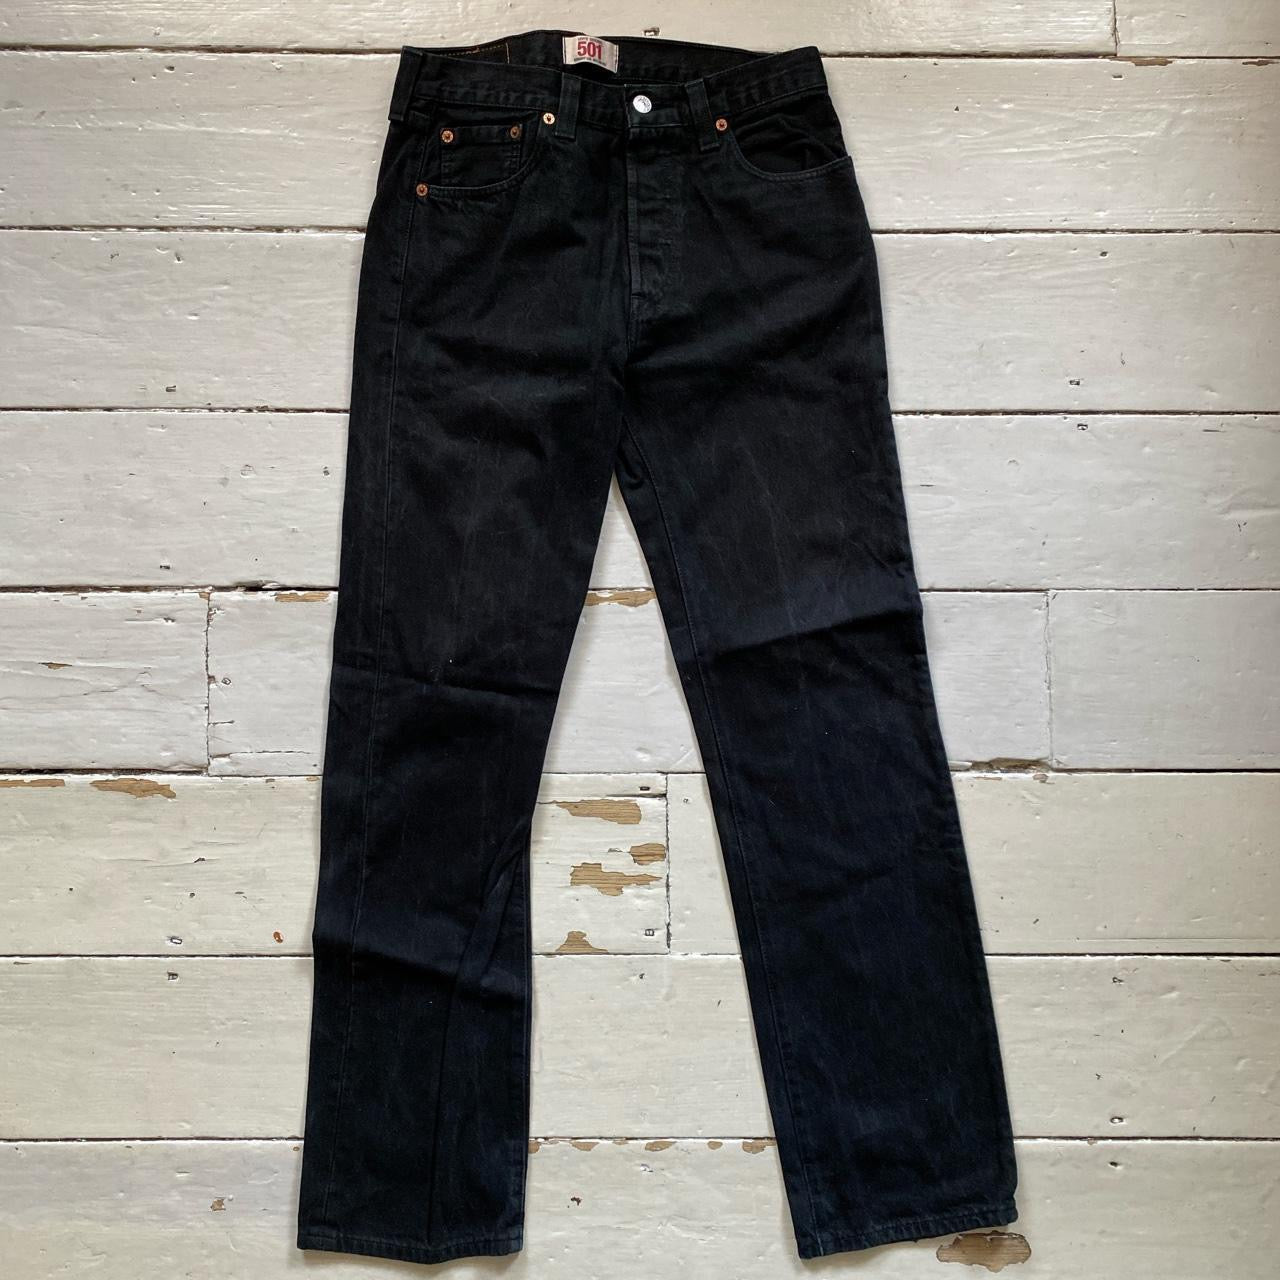 Levis 501 Black Jeans (30/32)